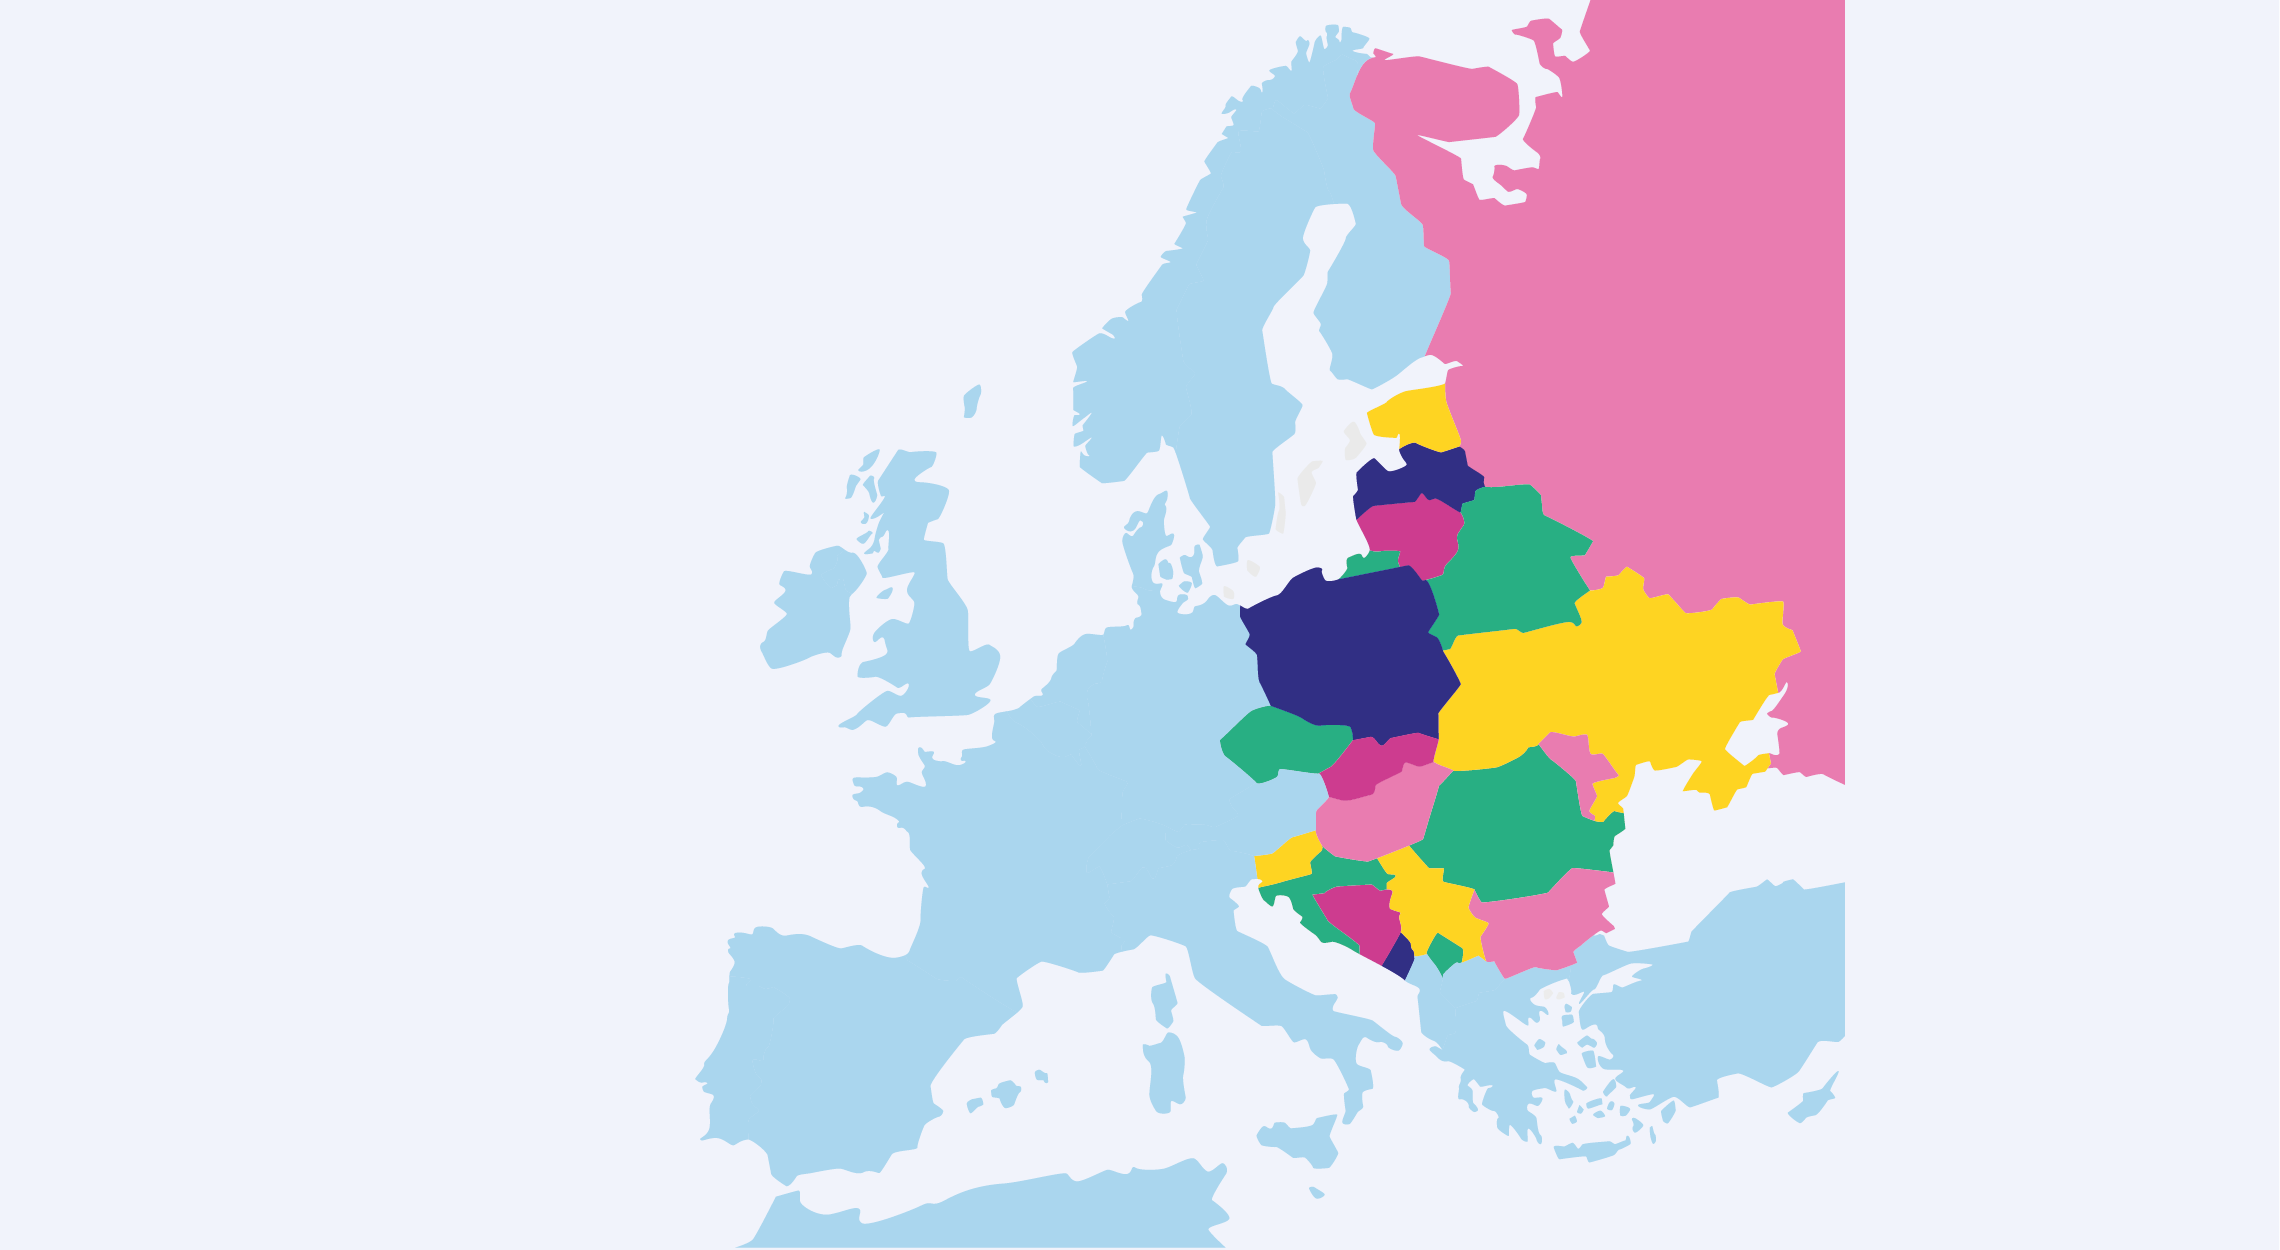 Software development in eastern europe